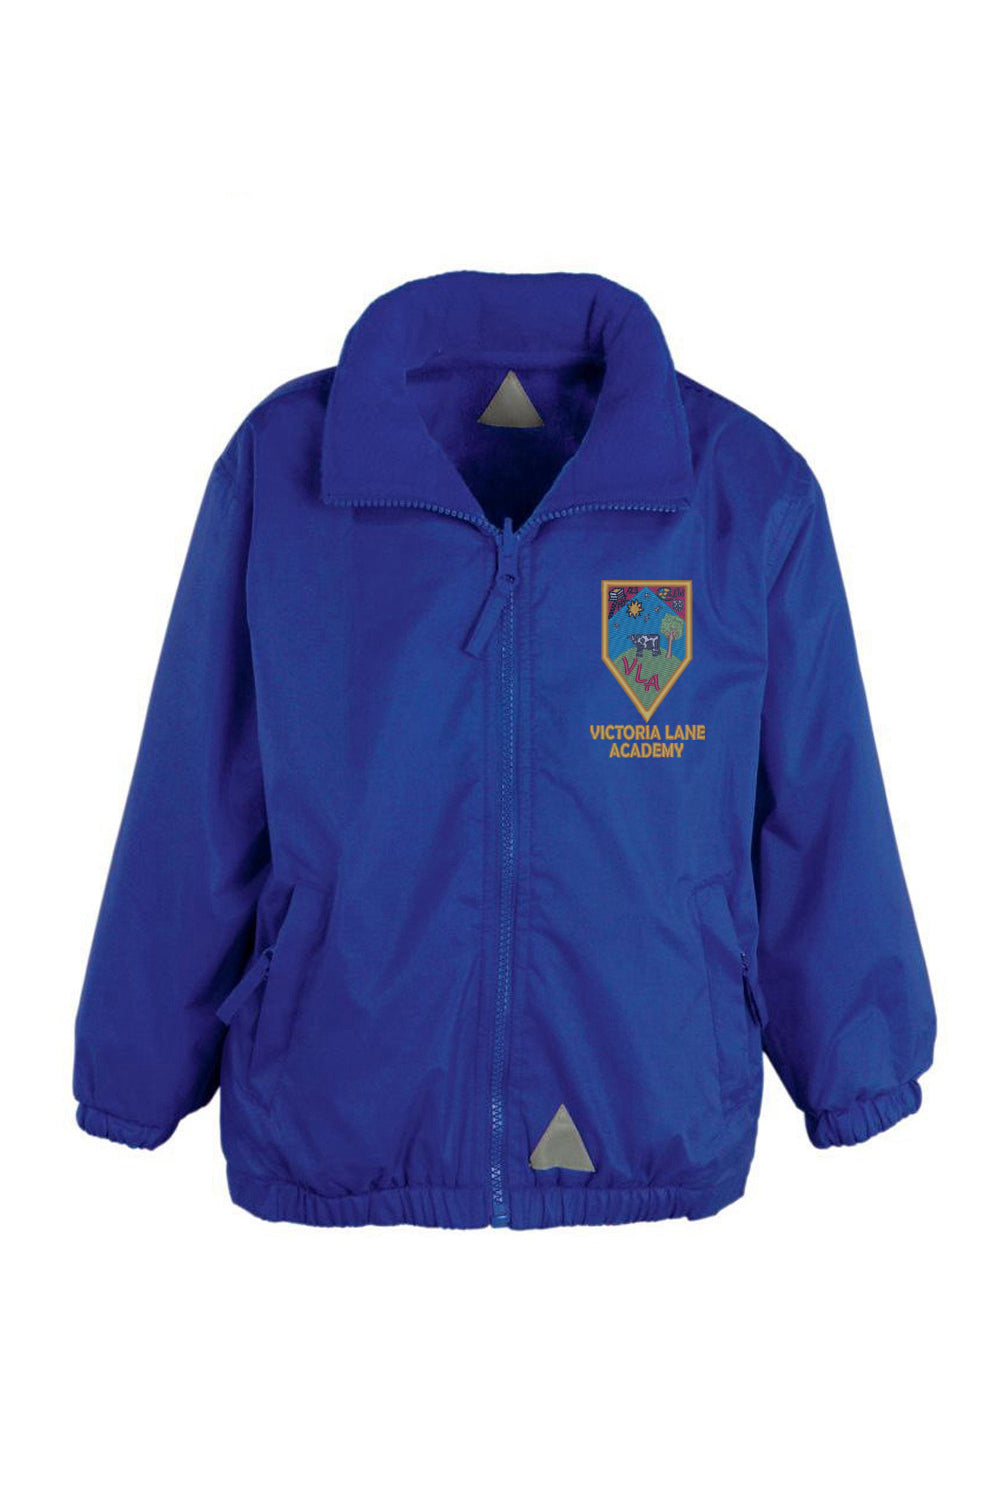 Victoria Lane Royal Blue Shower Jacket